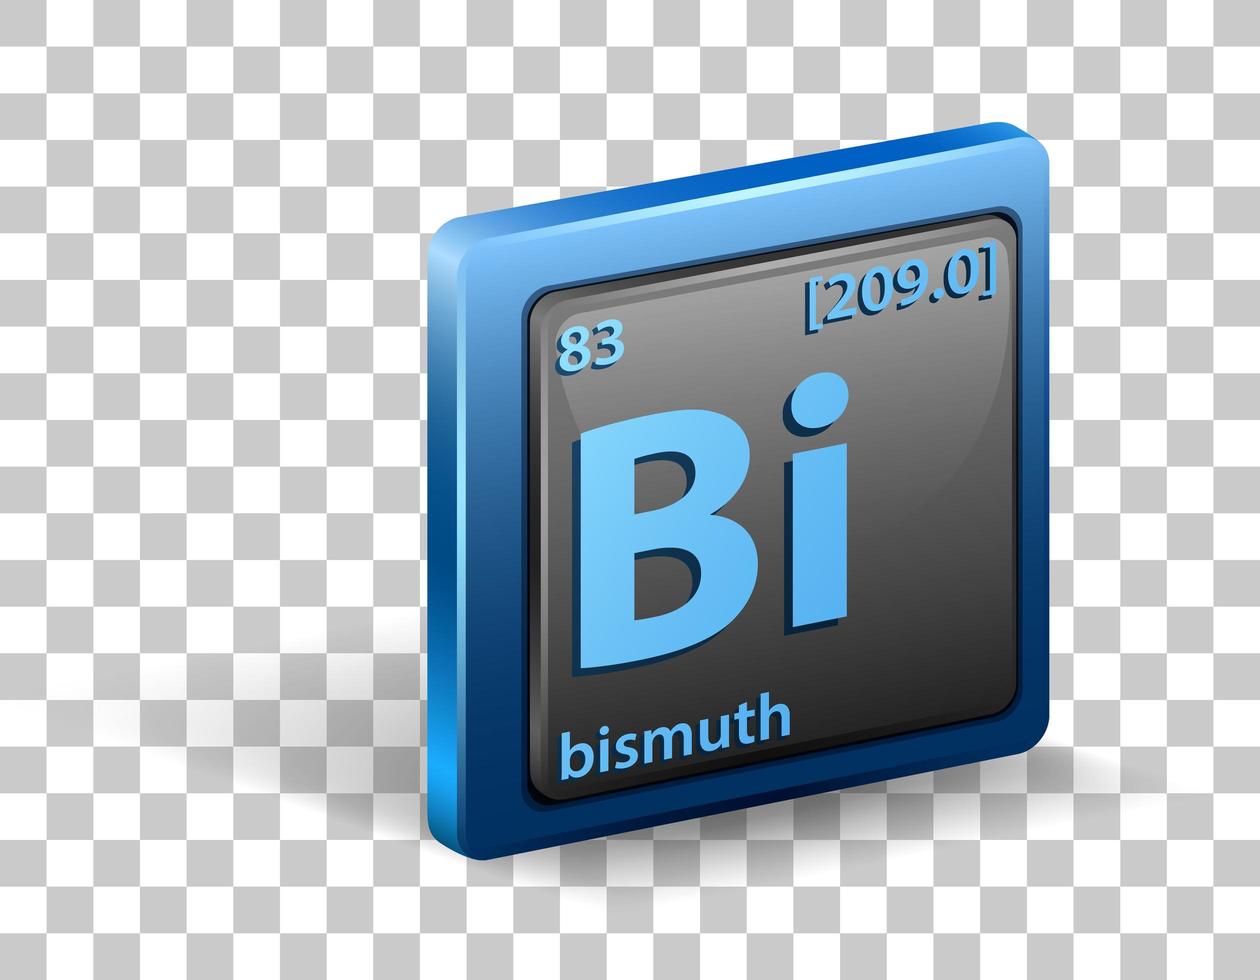 elemento chimico del bismuto. simbolo chimico con numero atomico e massa atomica. vettore